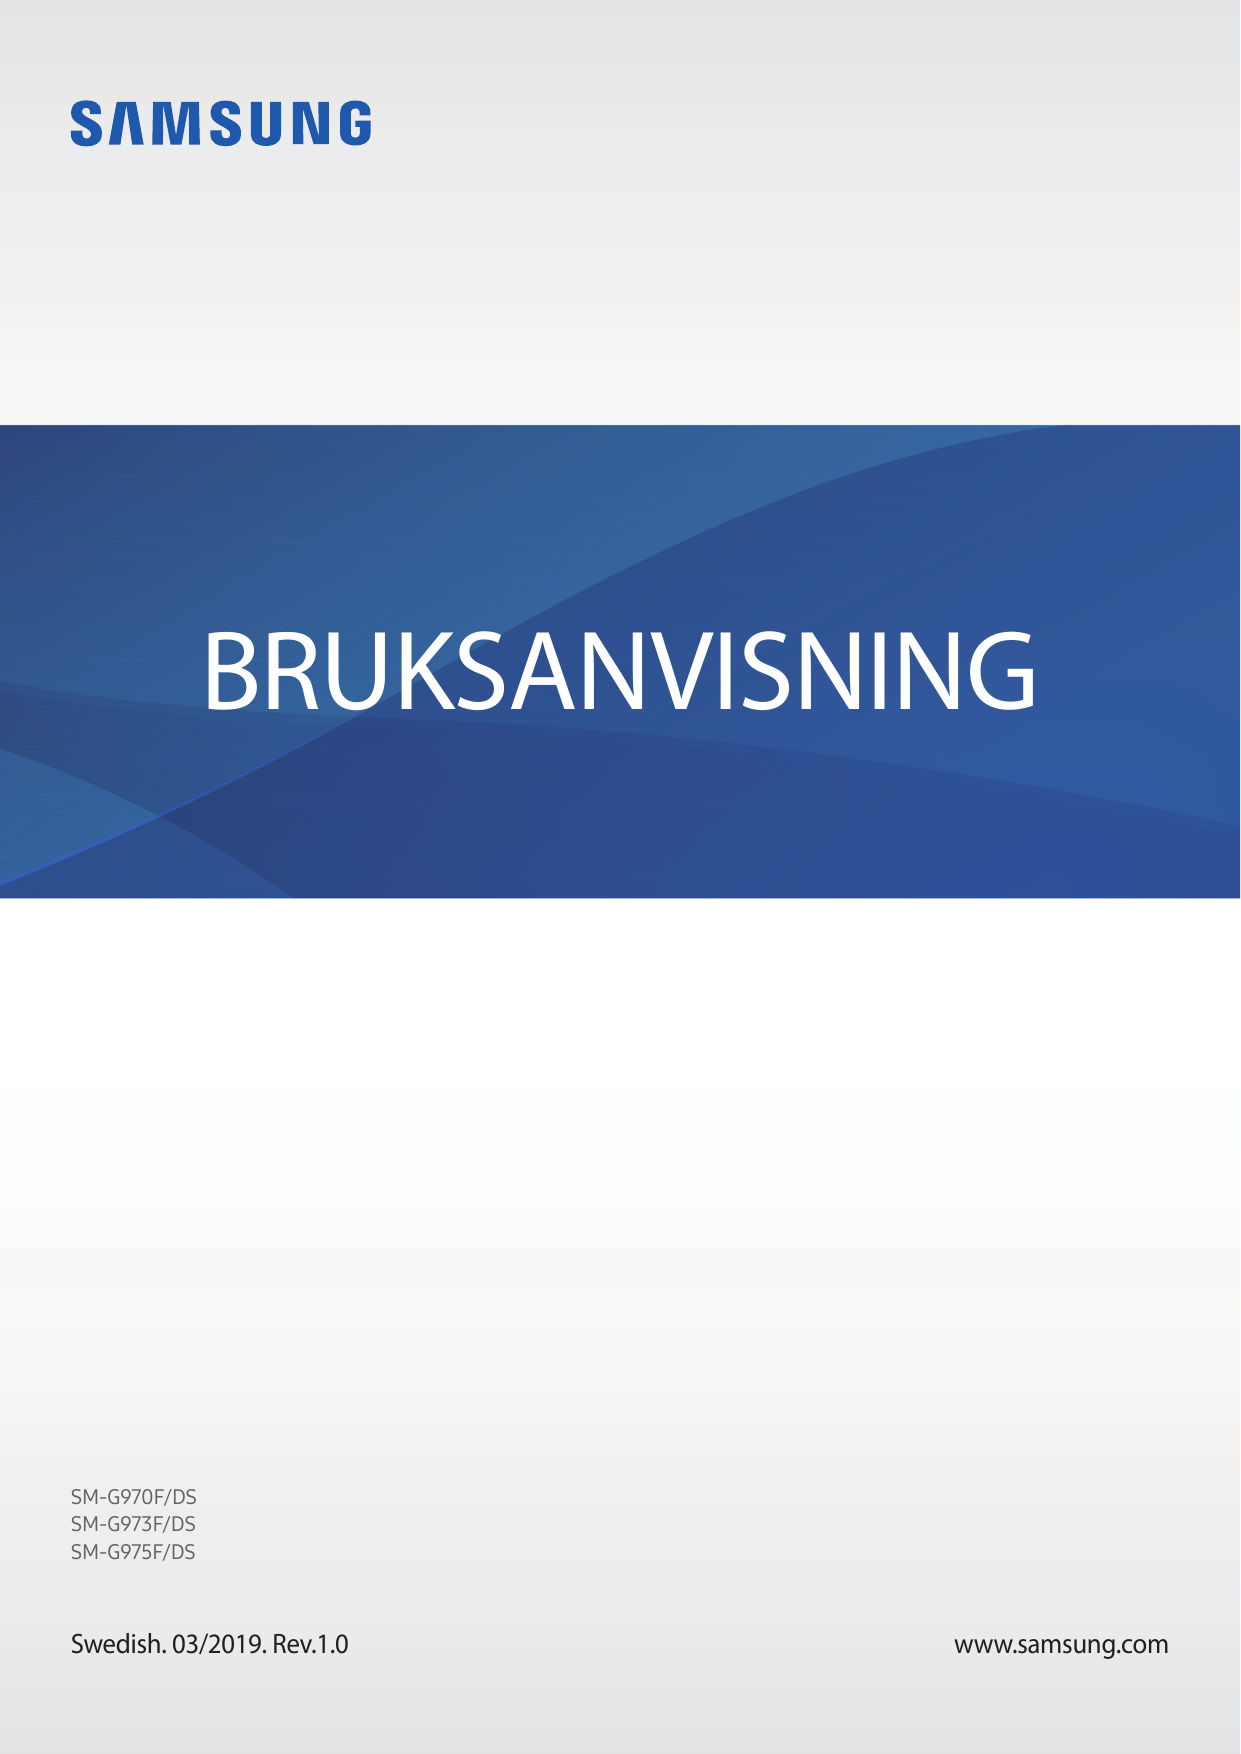 BRUKSANVISNINGSM-G970F/DSSM-G973F/DSSM-G975F/DSSwedish. 03/2019. Rev.1.0www.samsung.com